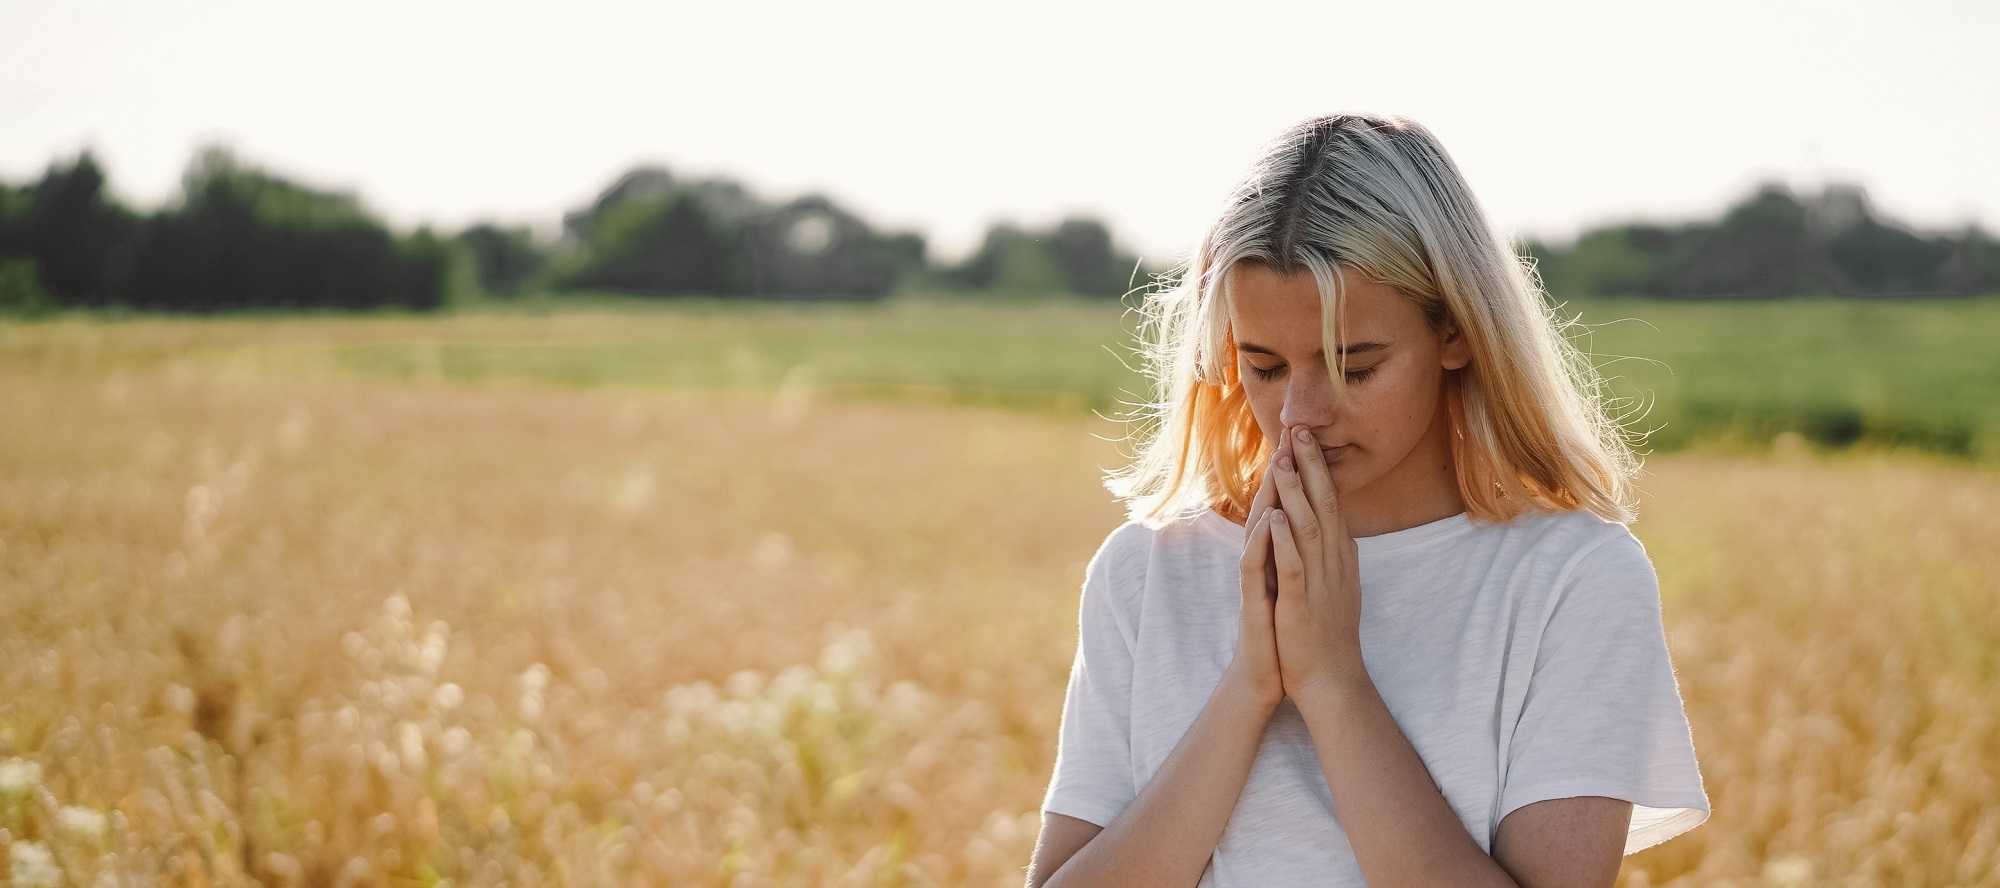 Praying Girl in field